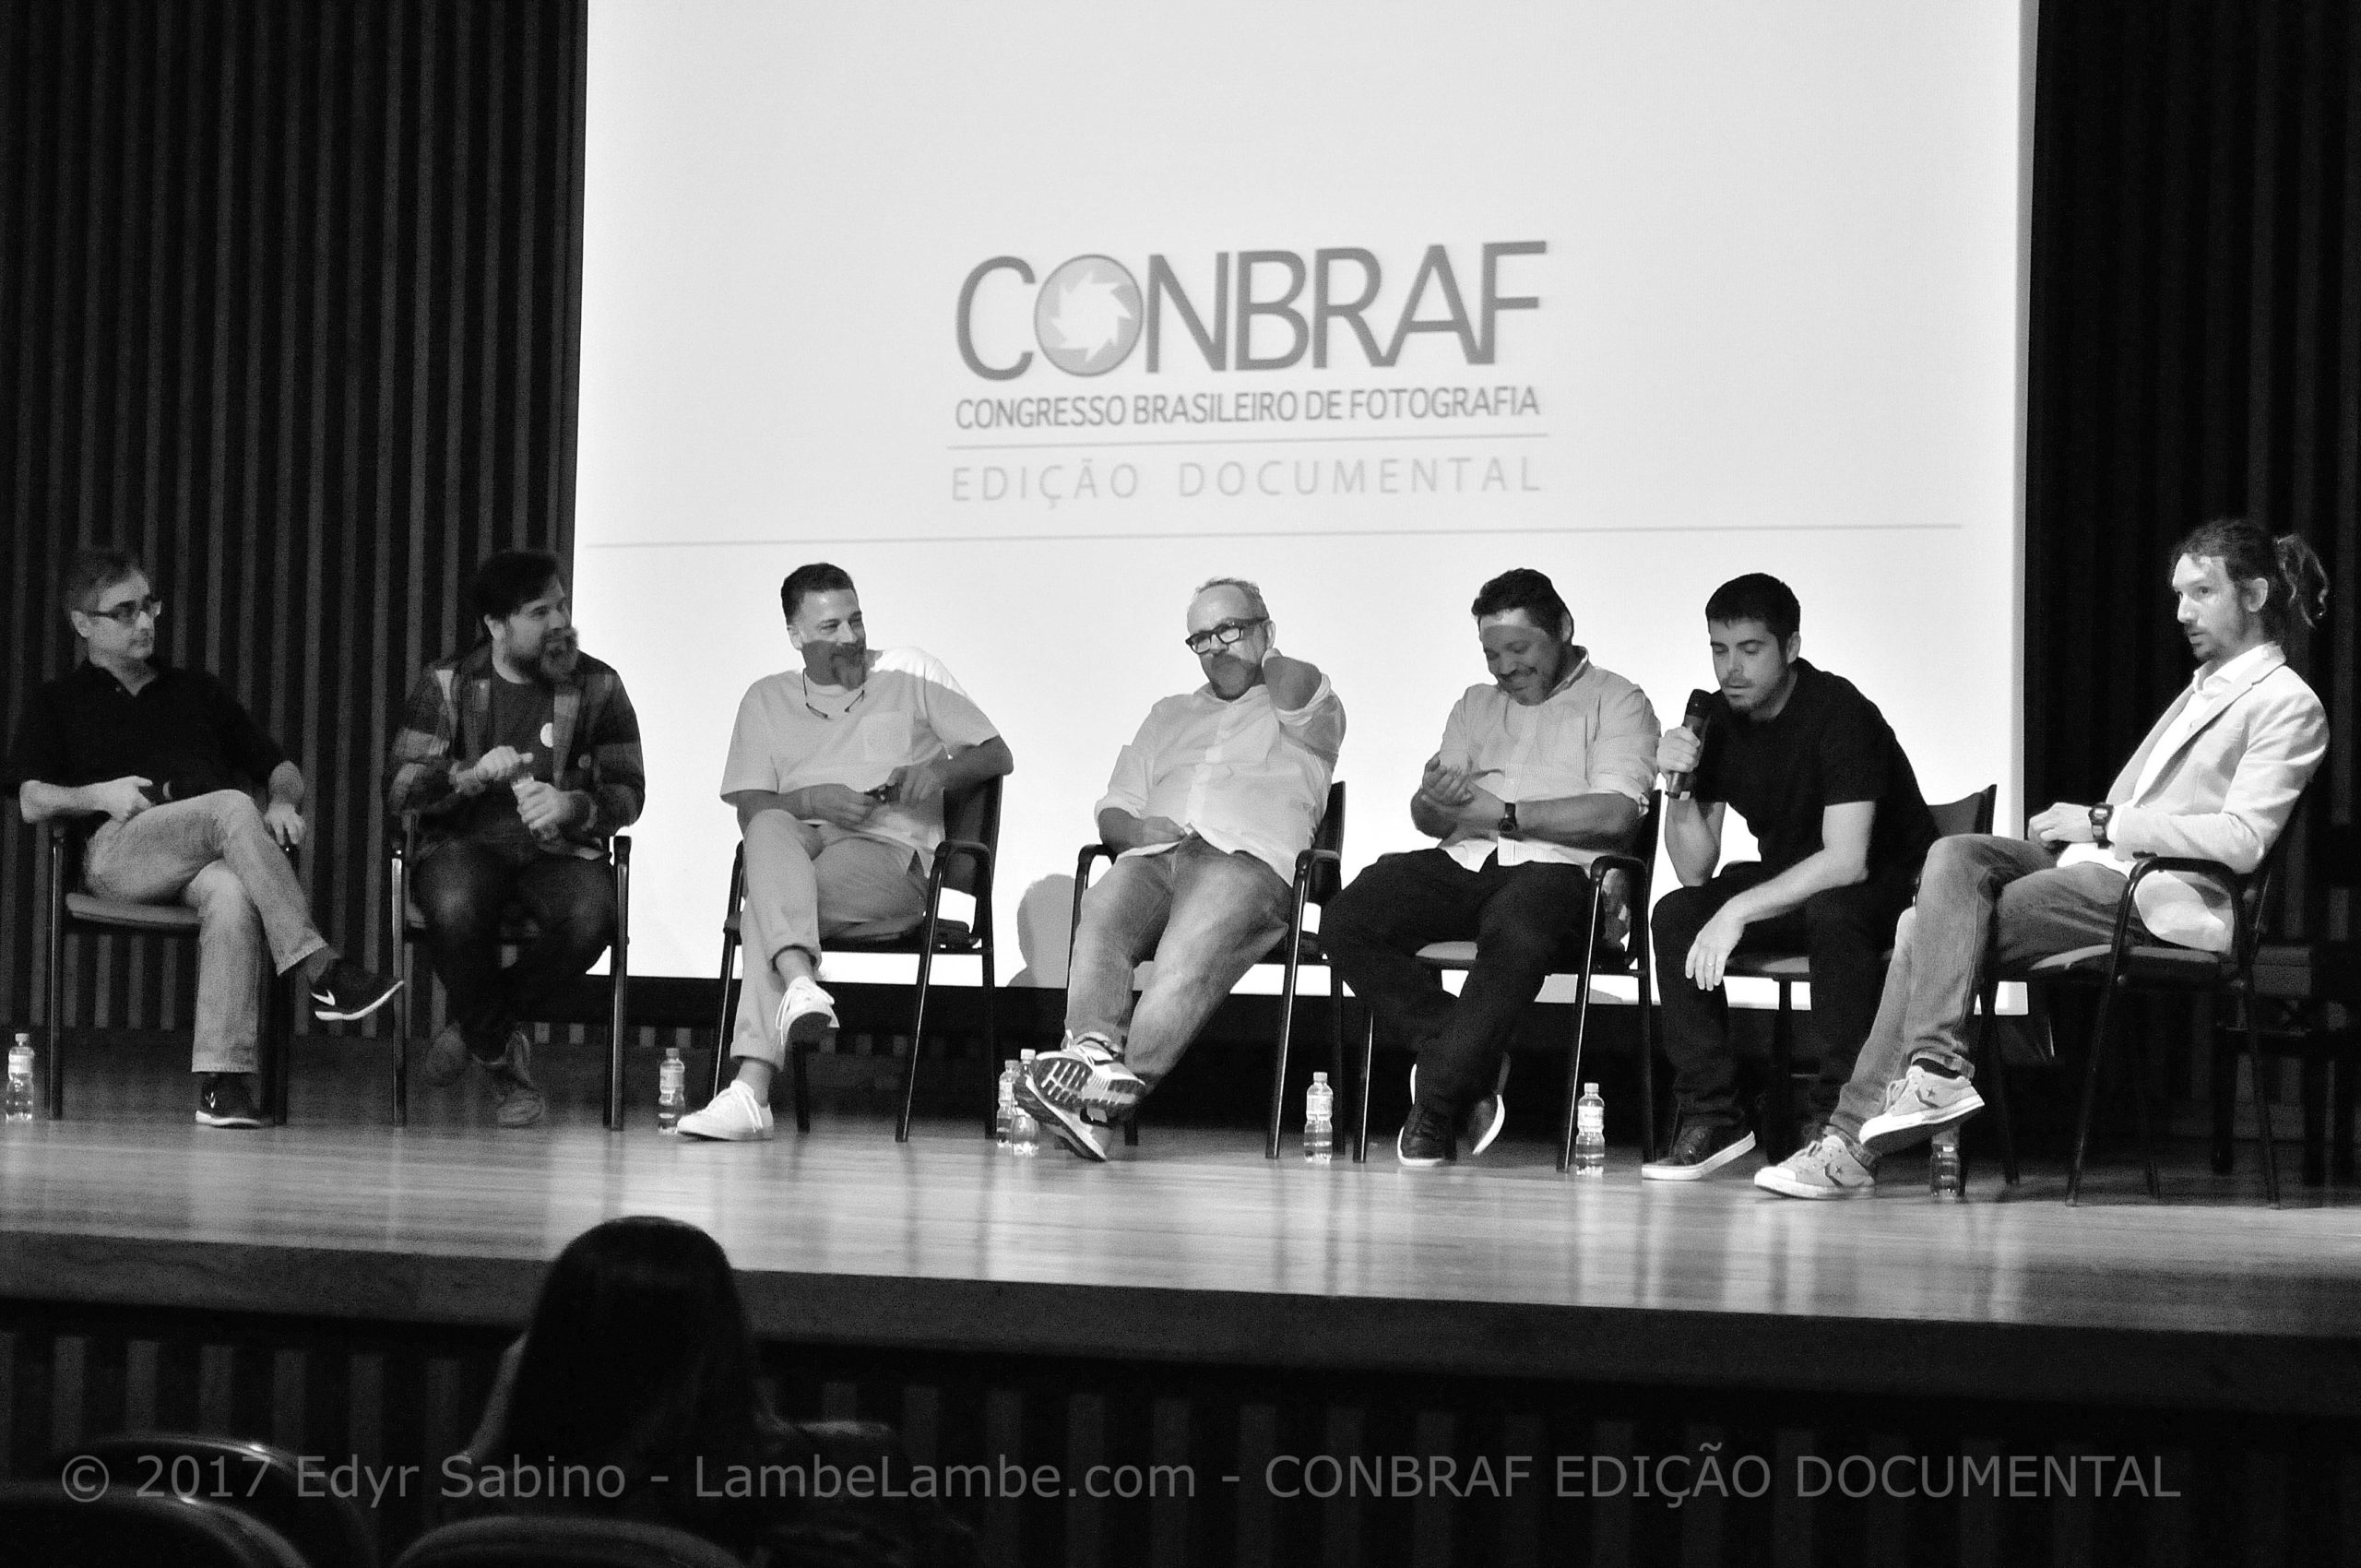 CONBRAF Edição Documental 2017